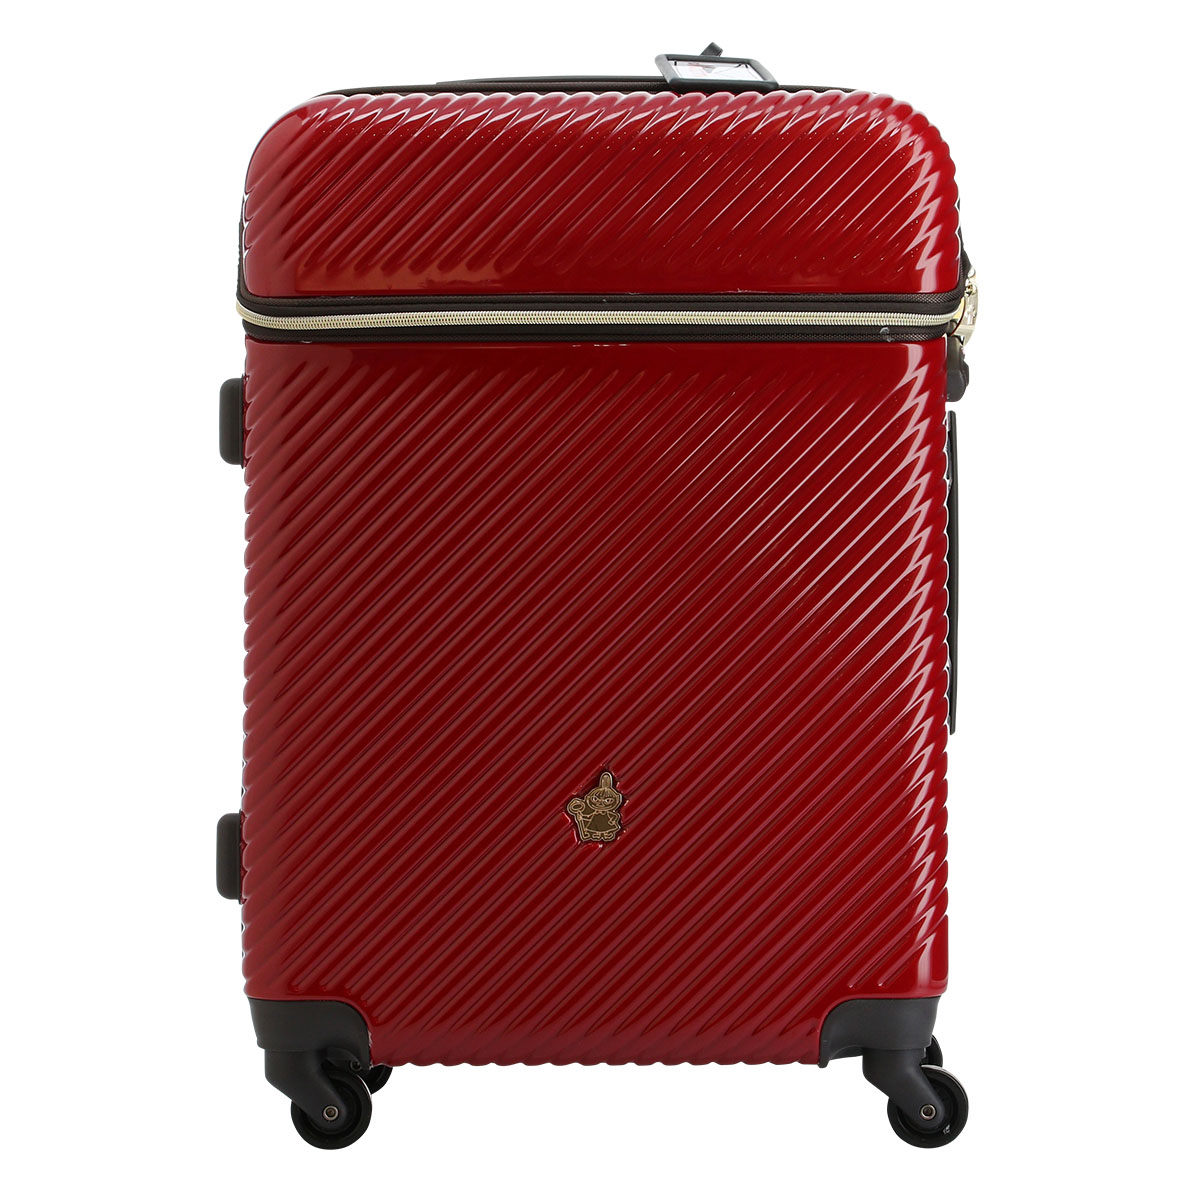 ムーミン スーツケース 当社限定 かわいい 49L 63cm 3.8kg MM2-018 フロントオープン ハード ファスナー MOOMIN  TSAロック搭載 1年保証